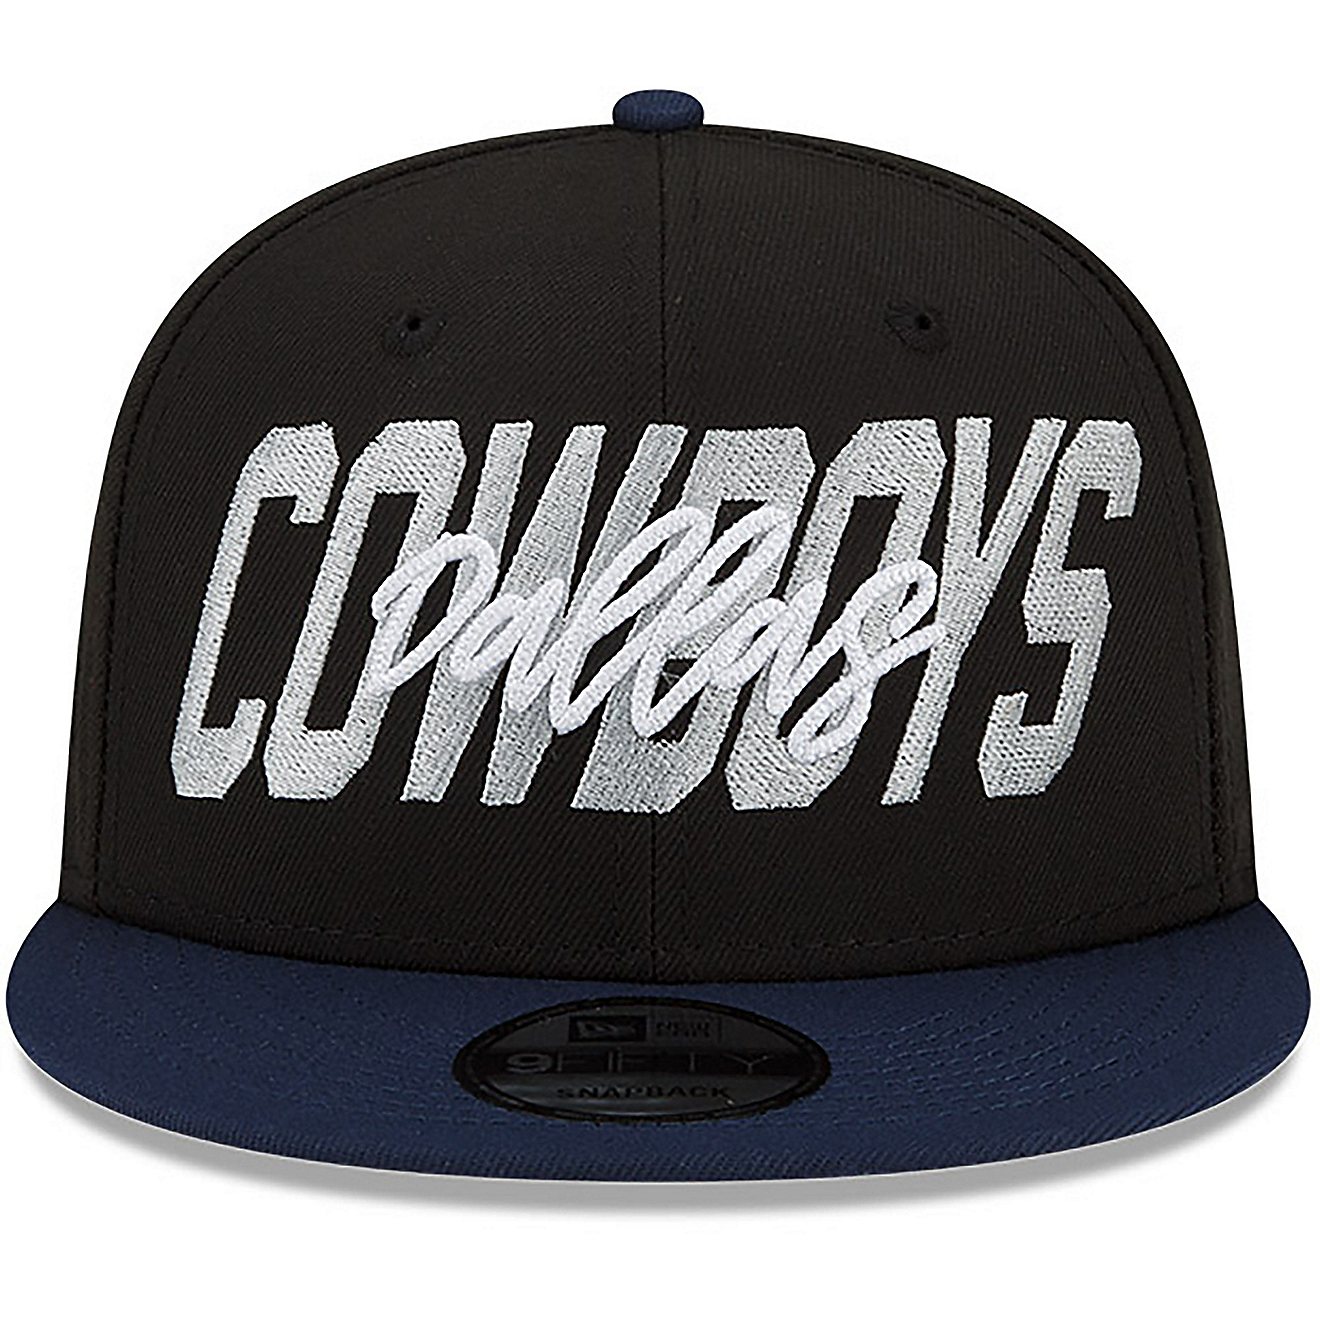 New Era Men's Dallas Cowboys NFL Draft '22 9FIFTY Cap                                                                            - view number 1